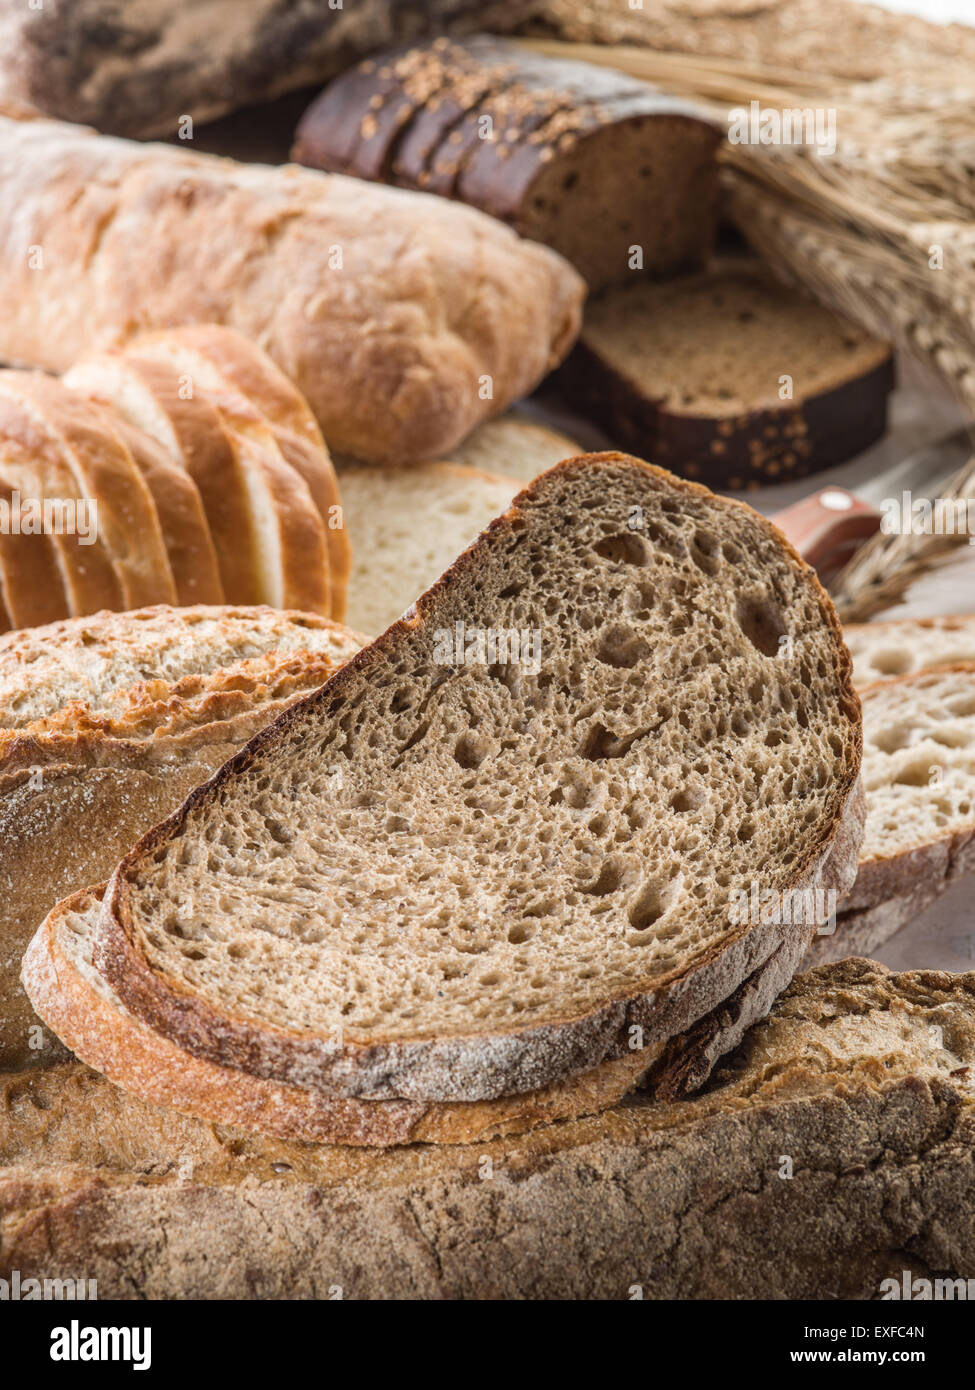 Il pane e il grano sulla scrivania in legno. Foto Stock